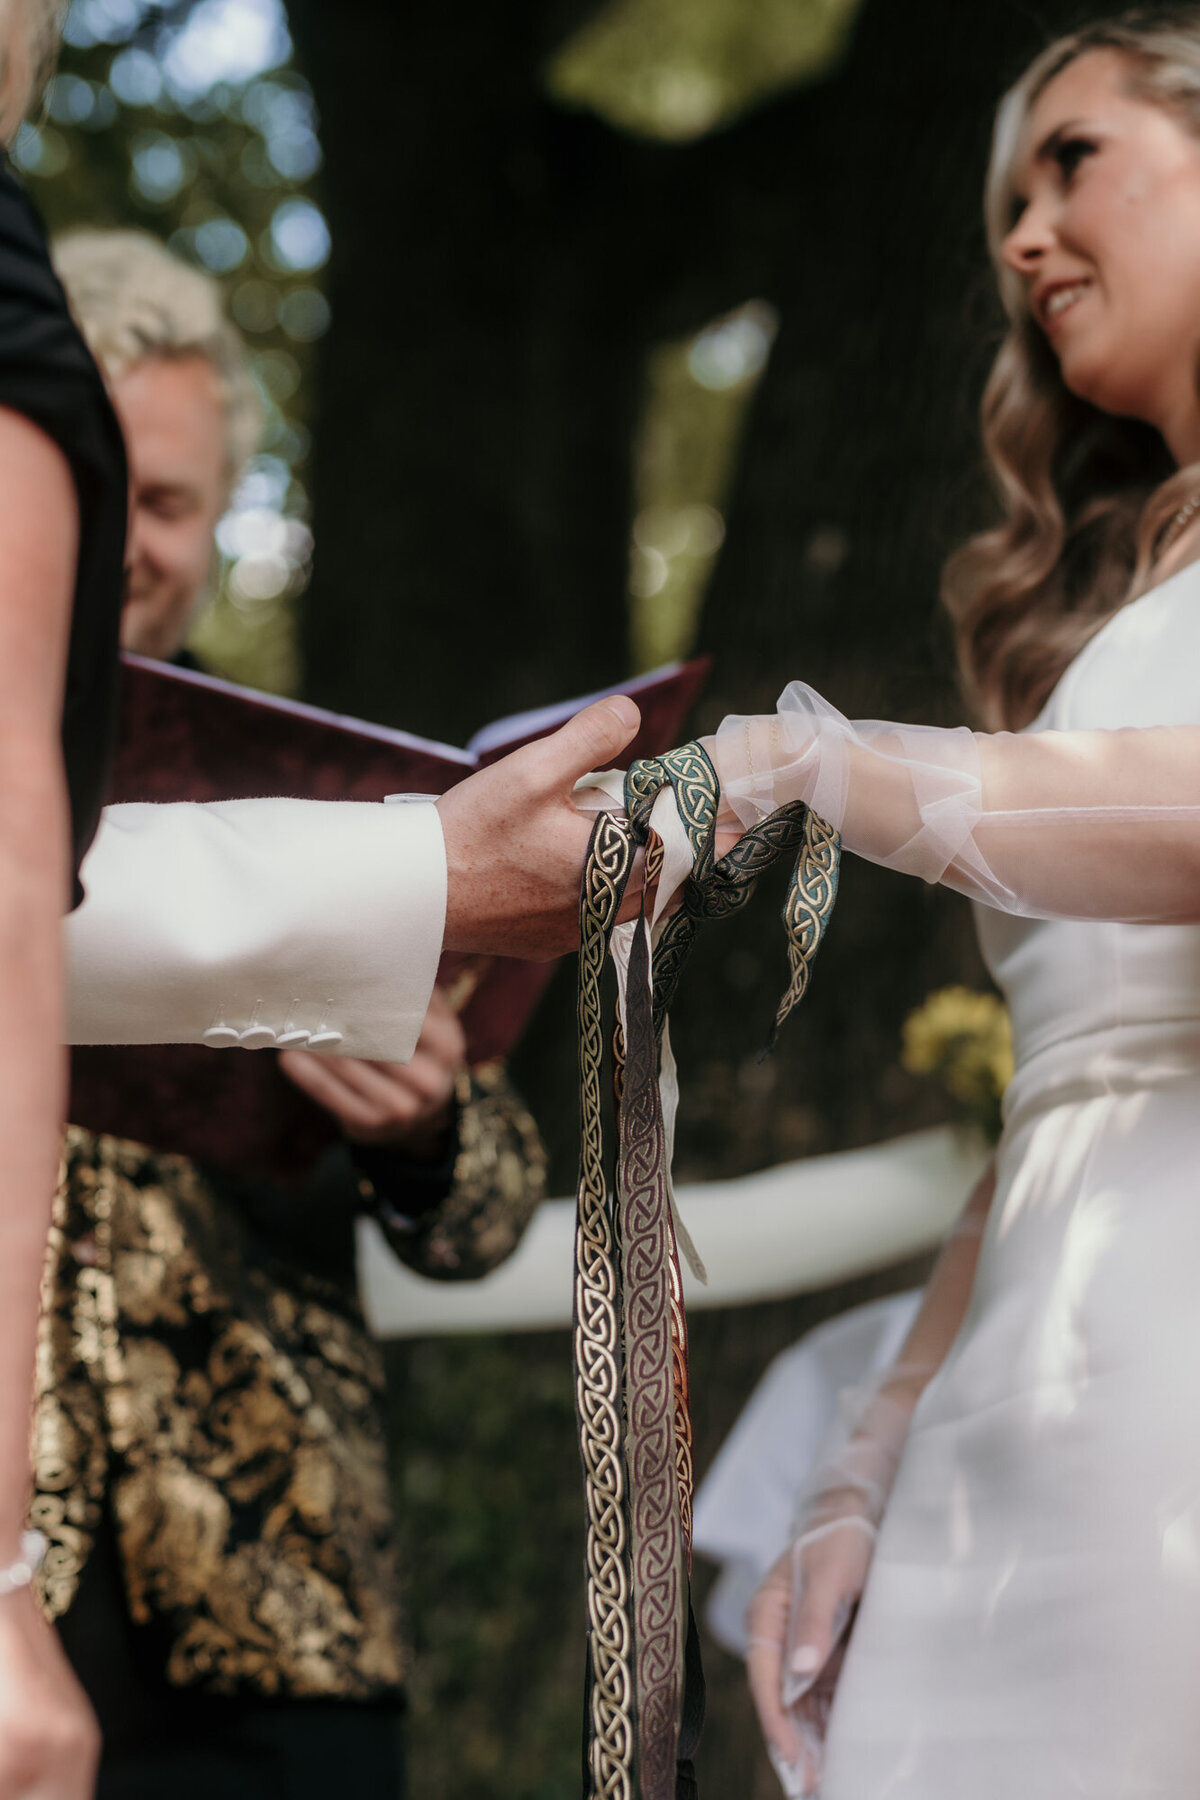 Die Hände des Hochzeitspaares sind verbunden durch die verzierten Bänder.